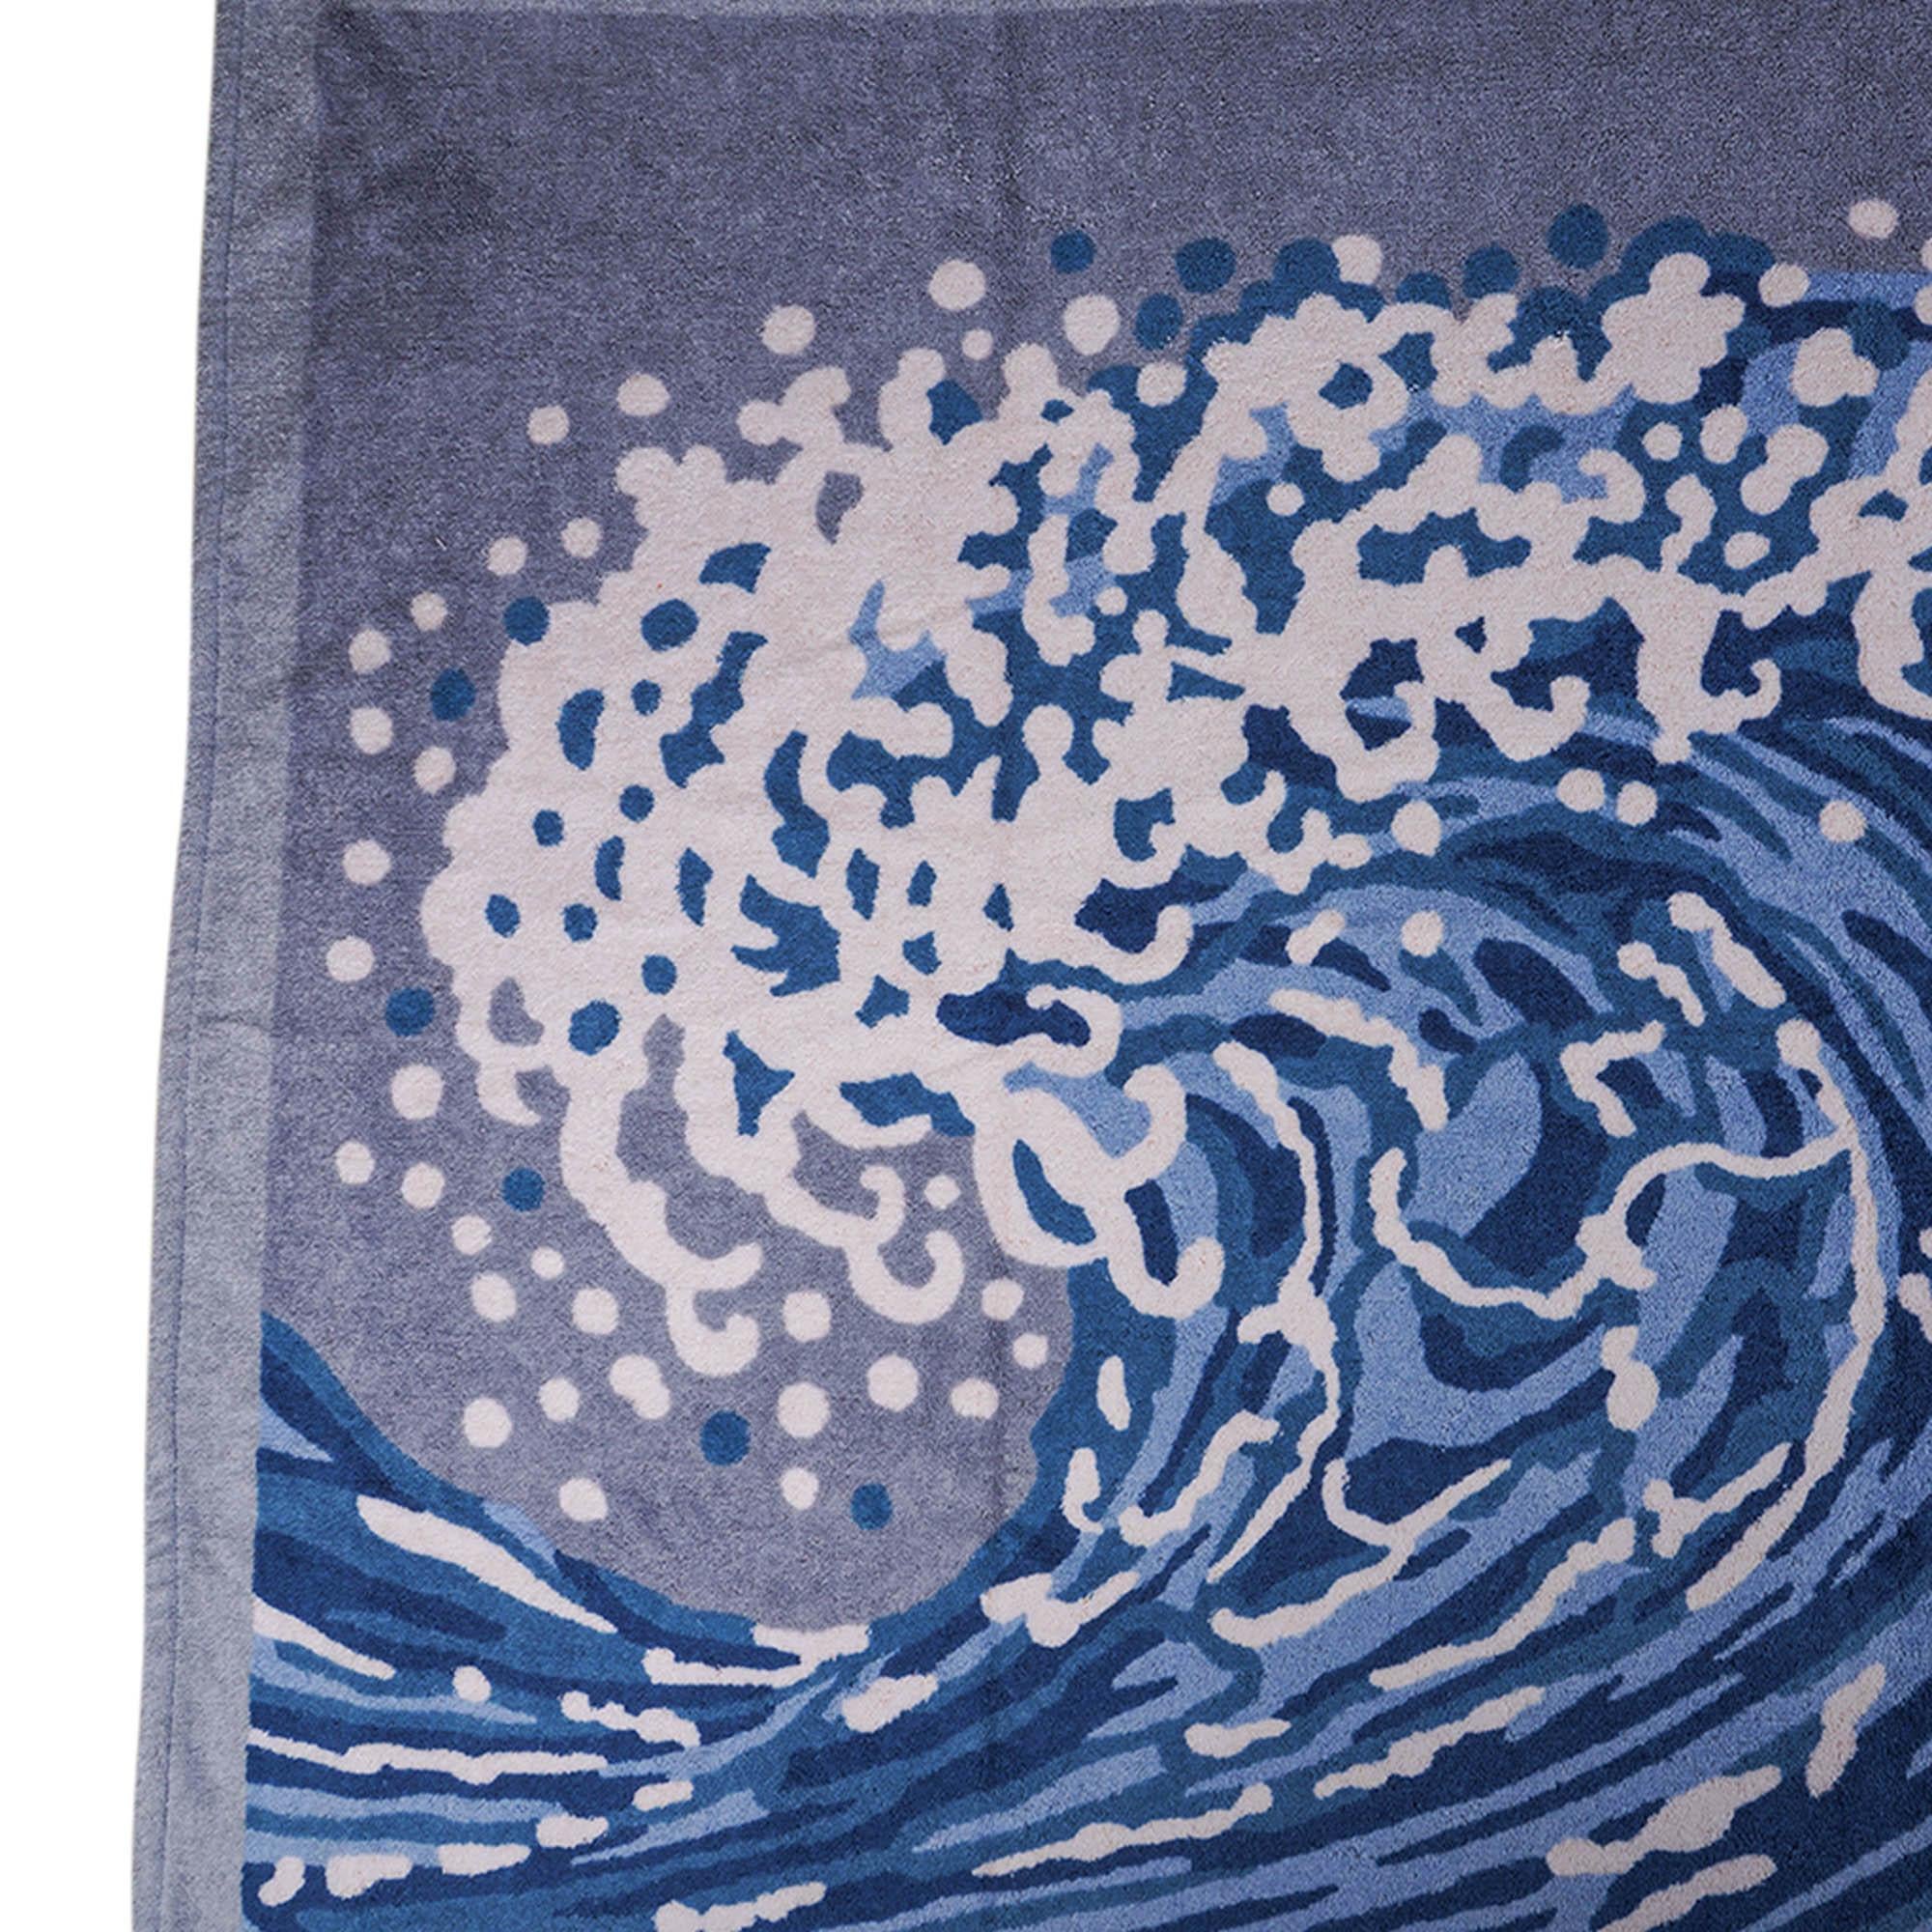 Hermes Wave Beach Towel in Denim 1